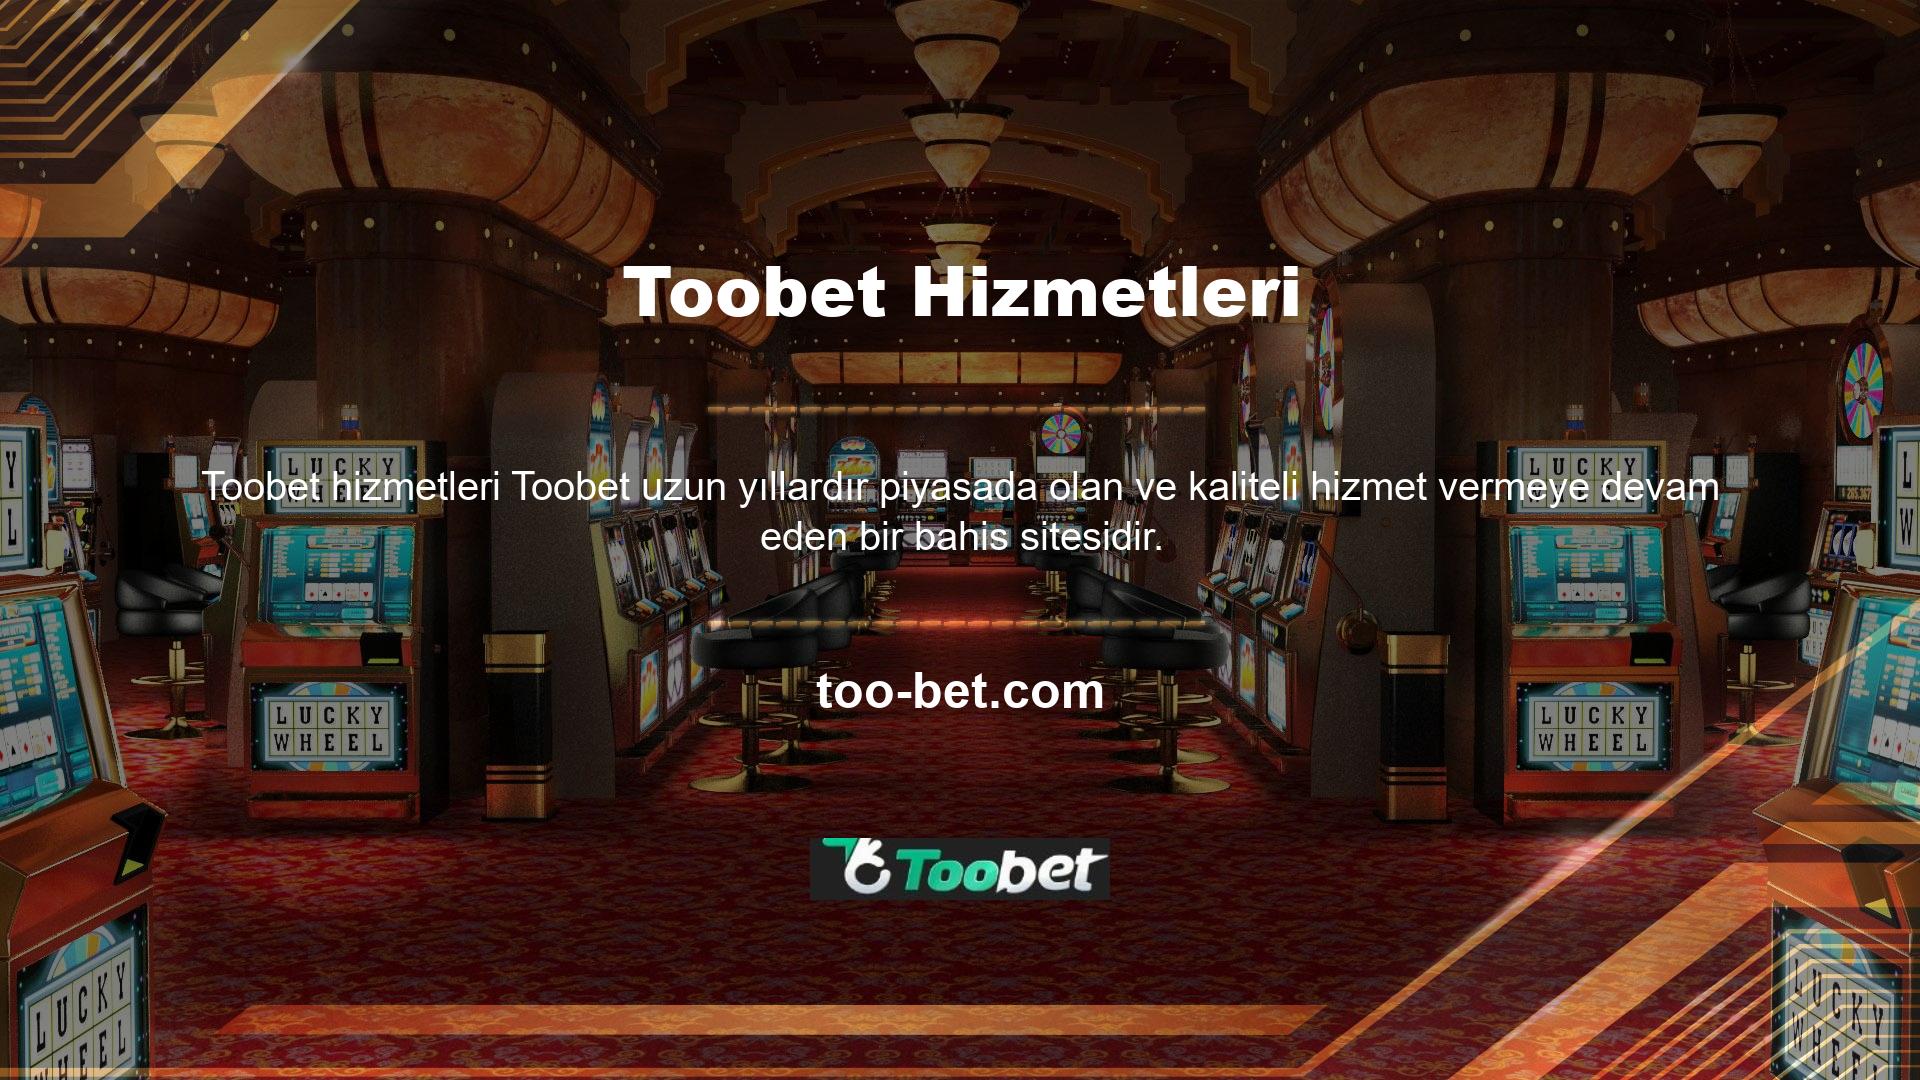 Binlerce aktif üyesiyle Toobet, insanların sitenizi ziyaret etmesini sağlayacak en etkili yerdir